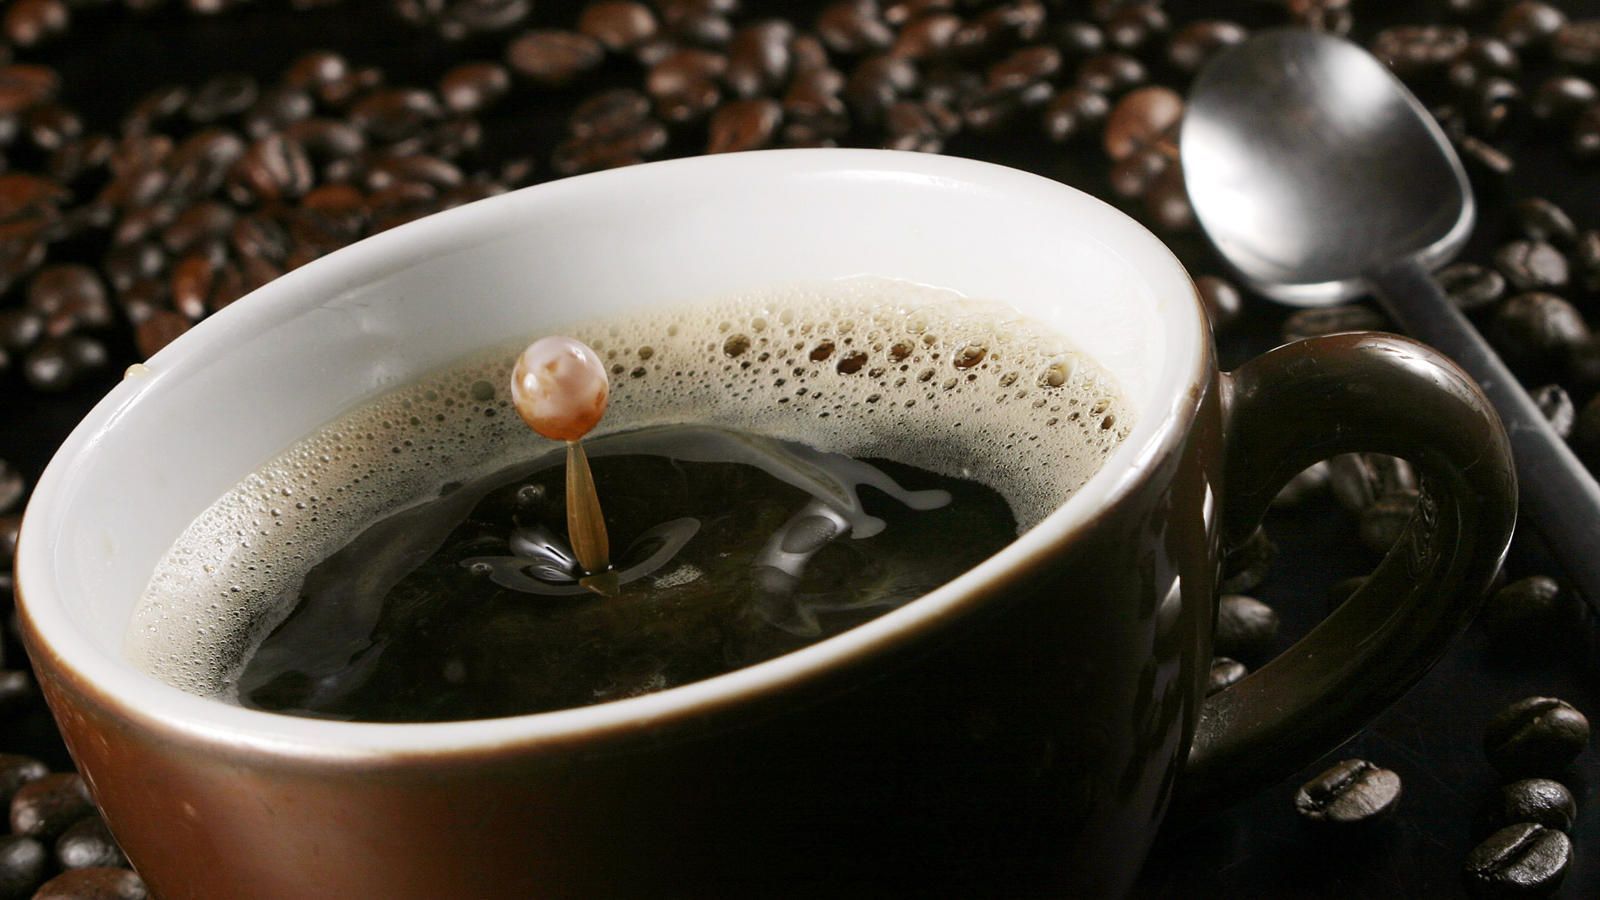 Um das Getränk Kaffee ranken sich viele Mythen.